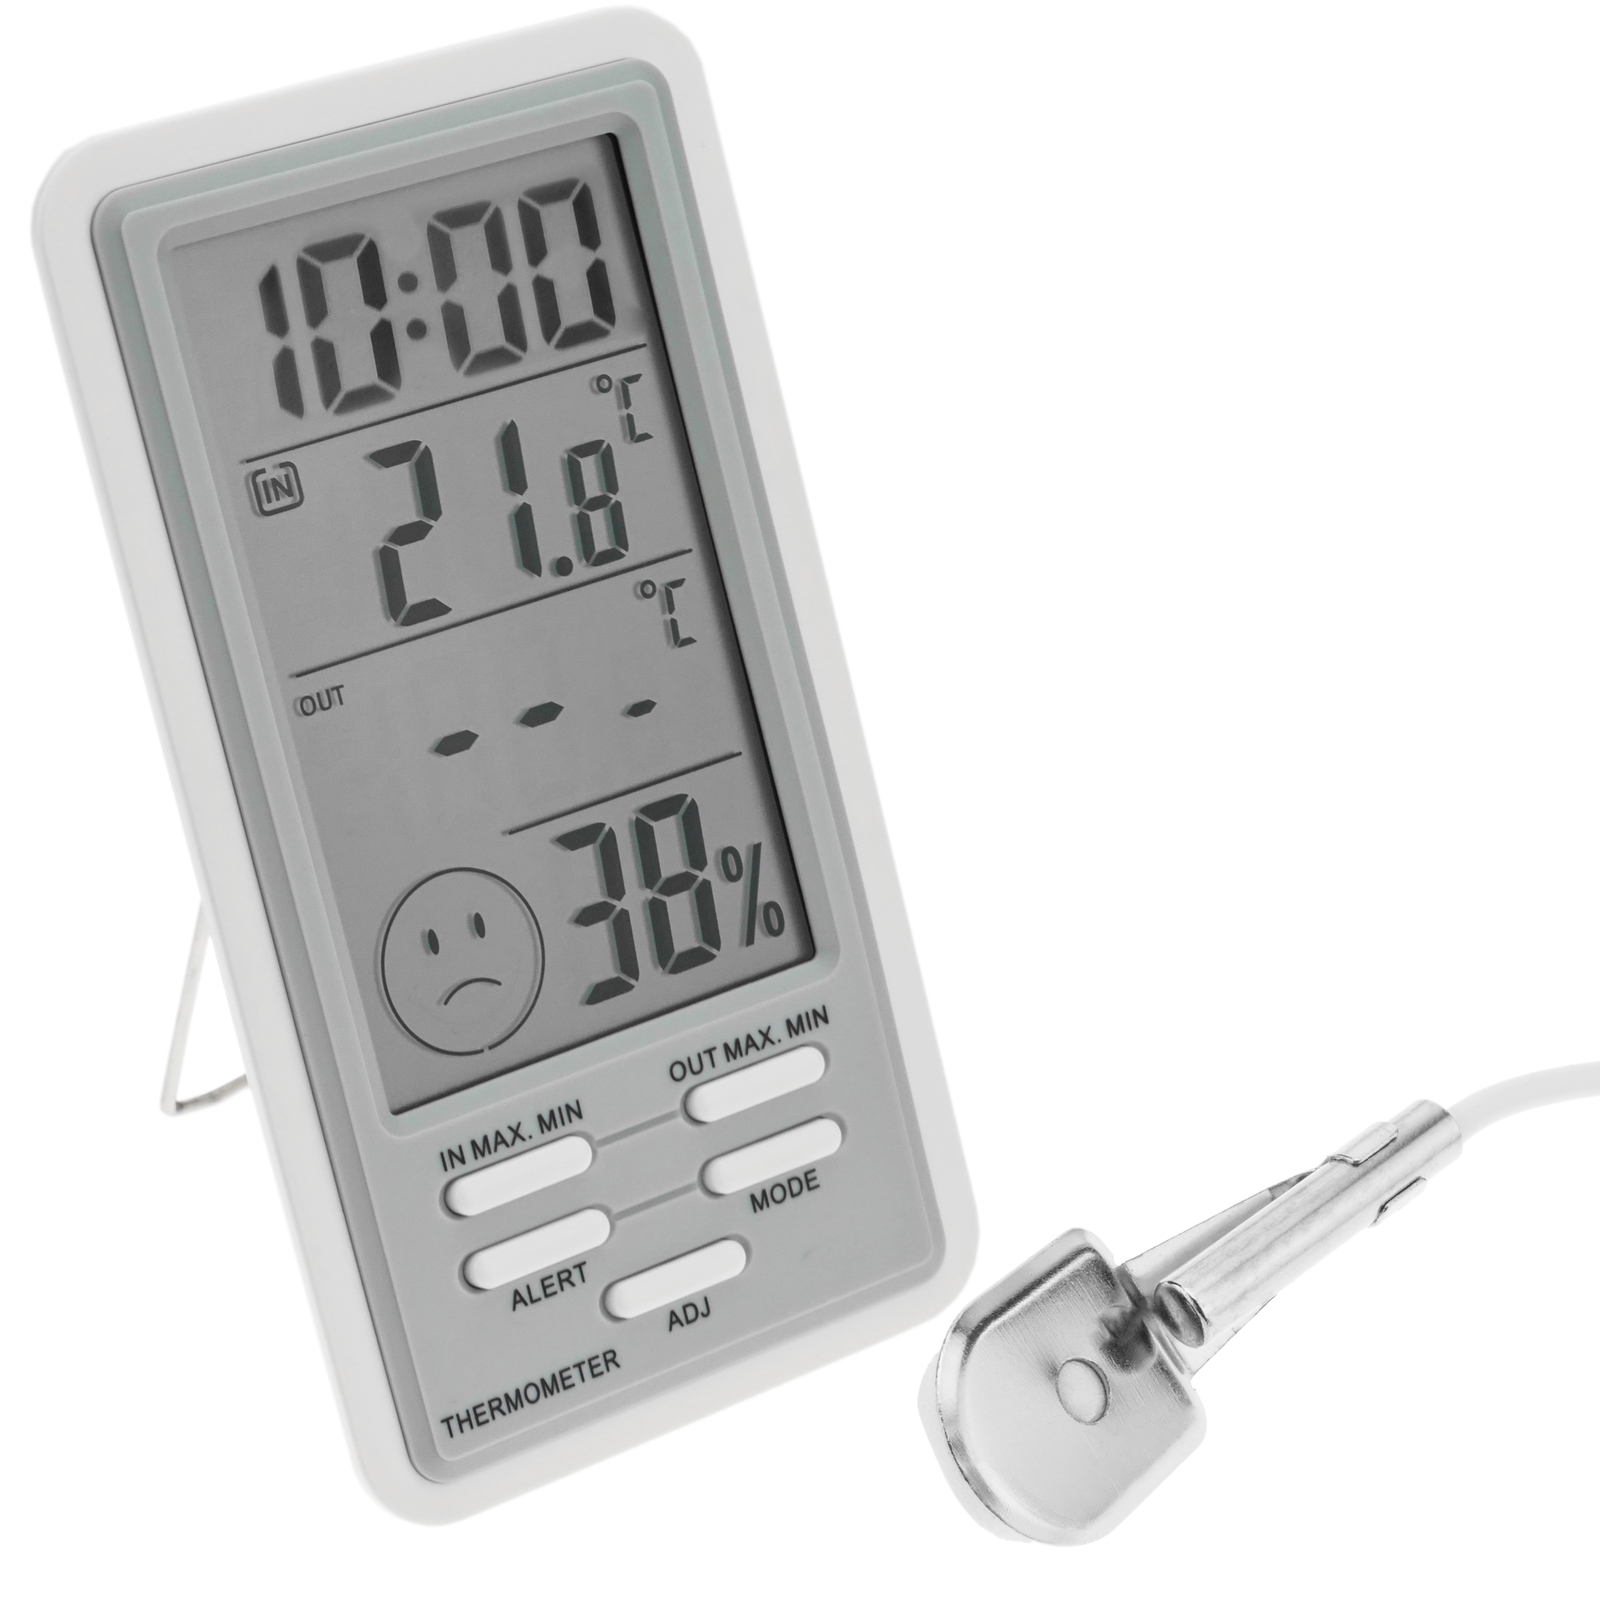 LCD digitale Termometro Igrometro tester di umidita e temperatura w Wired con sensore esterno bianco SODIAL R